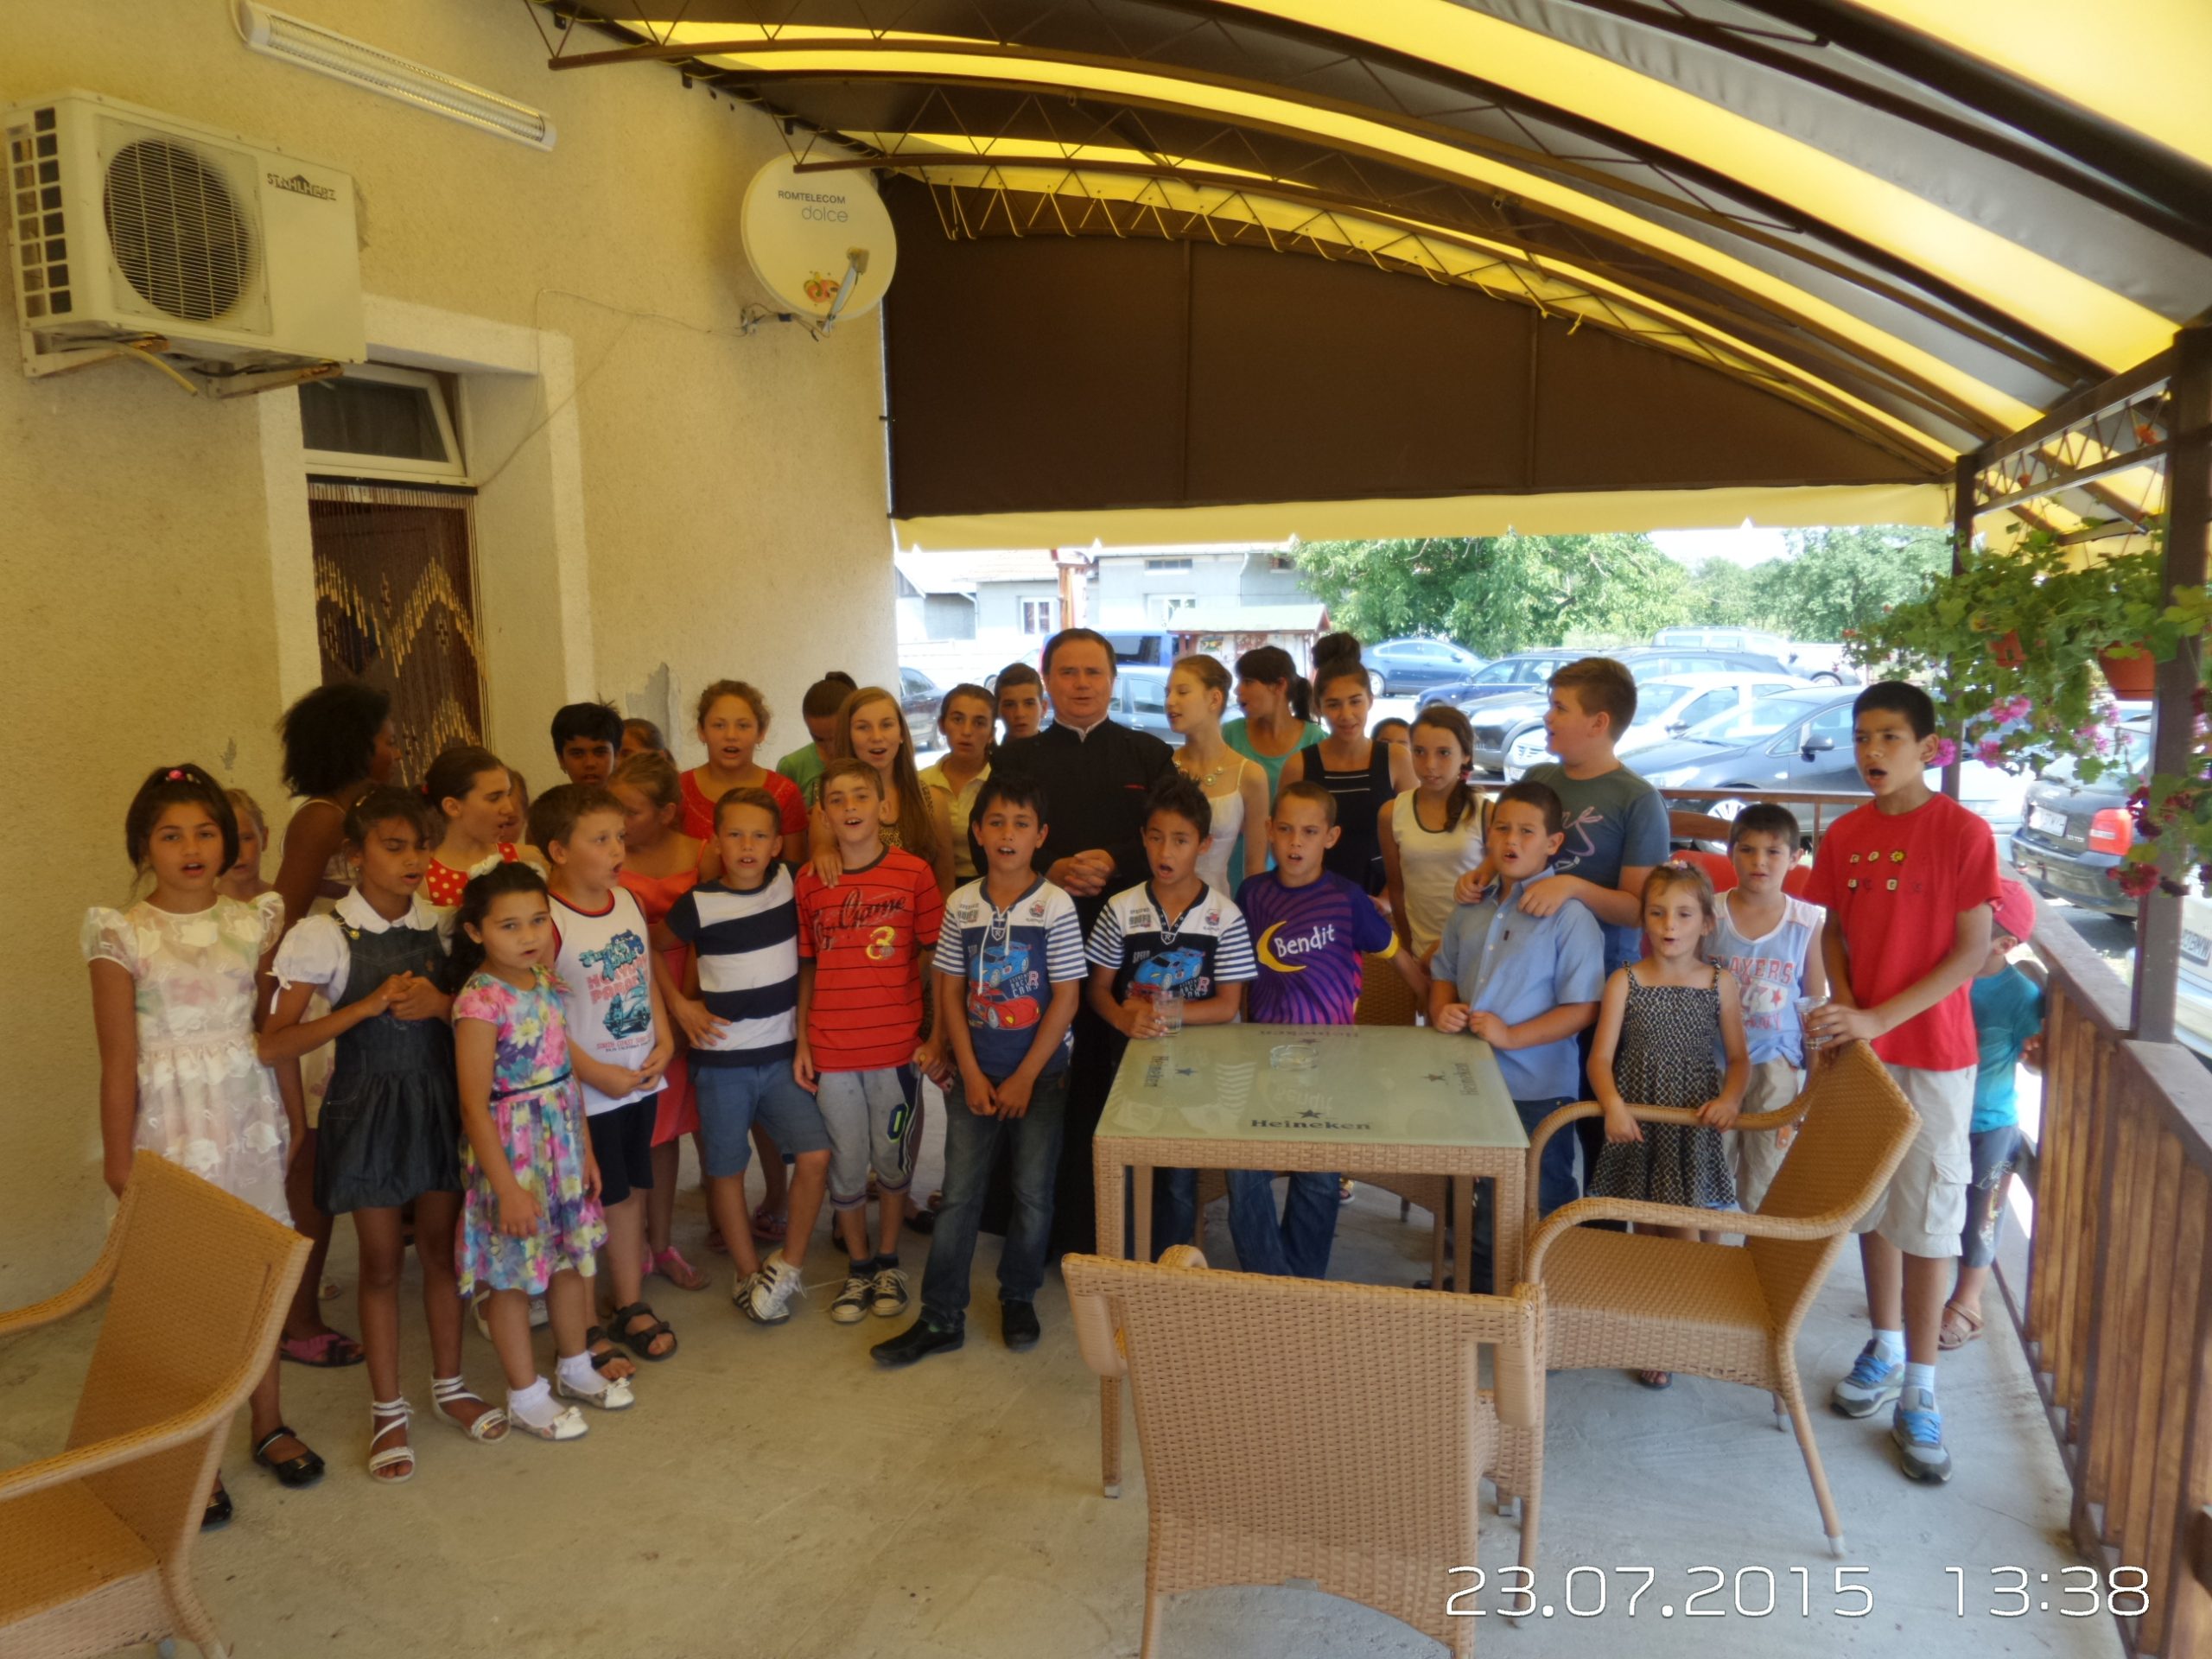 35 de copii şi-au expus lucrările în biserica din localitate